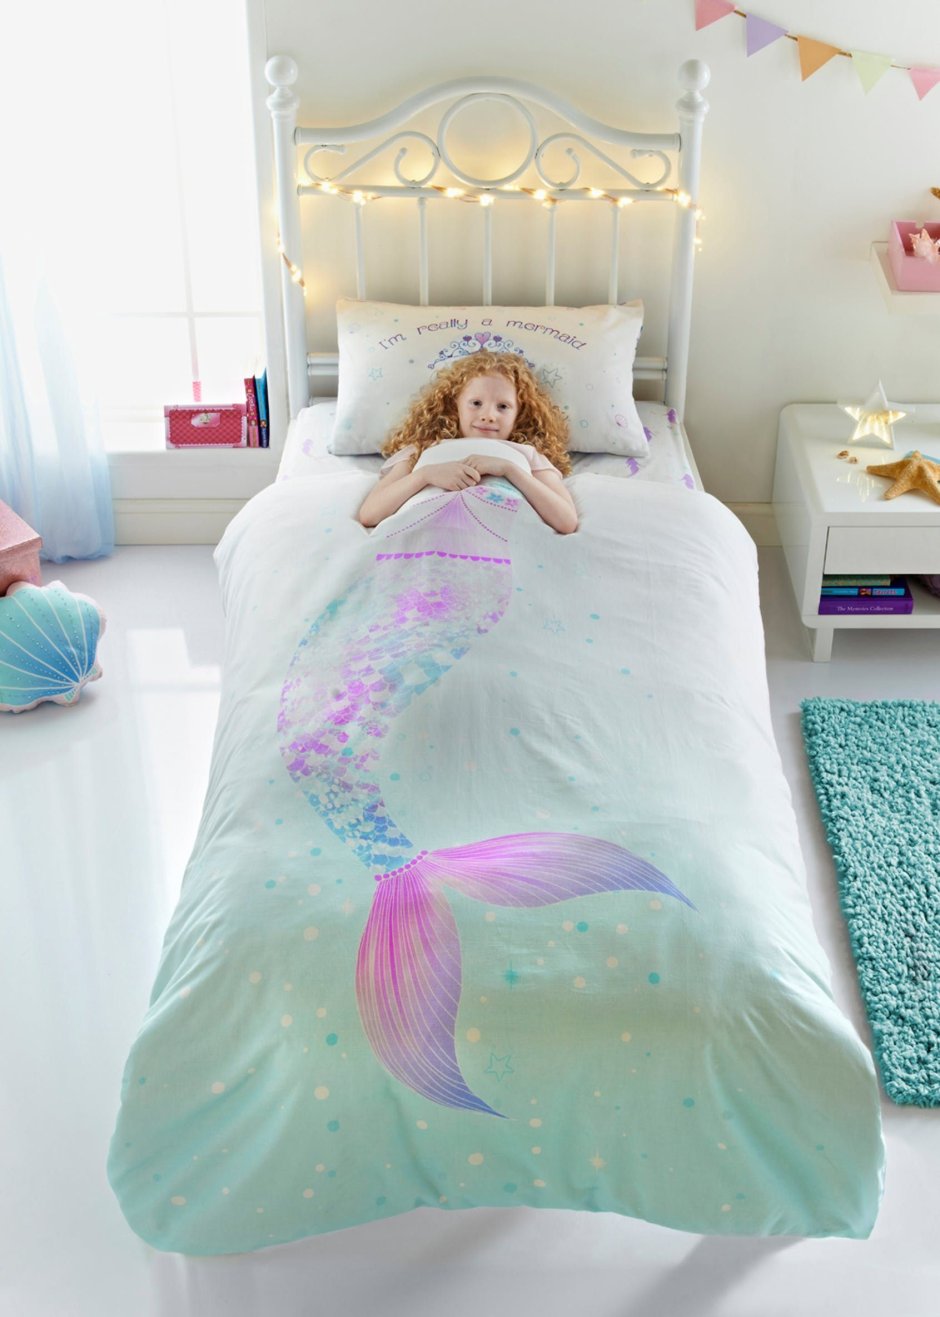 Mermaid toddler room